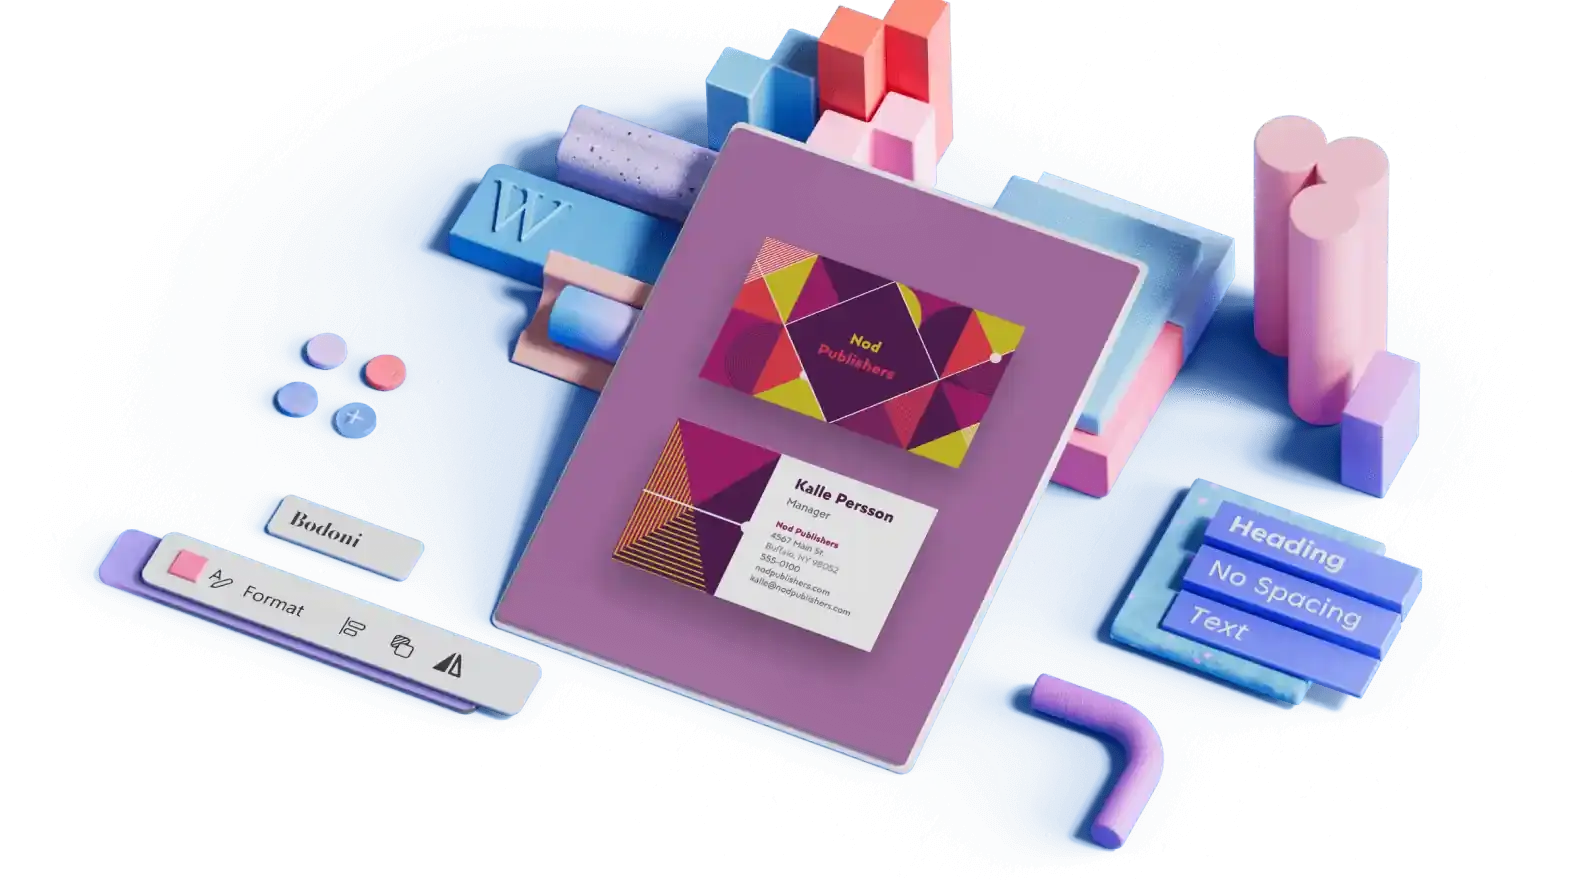 Πρότυπο σχεδίασης κάρτας επίσκεψης με γεωμετρικό έντονο χρώμα που περιβάλλεται από τρισδιάστατα στοιχεία σχεδιασμού